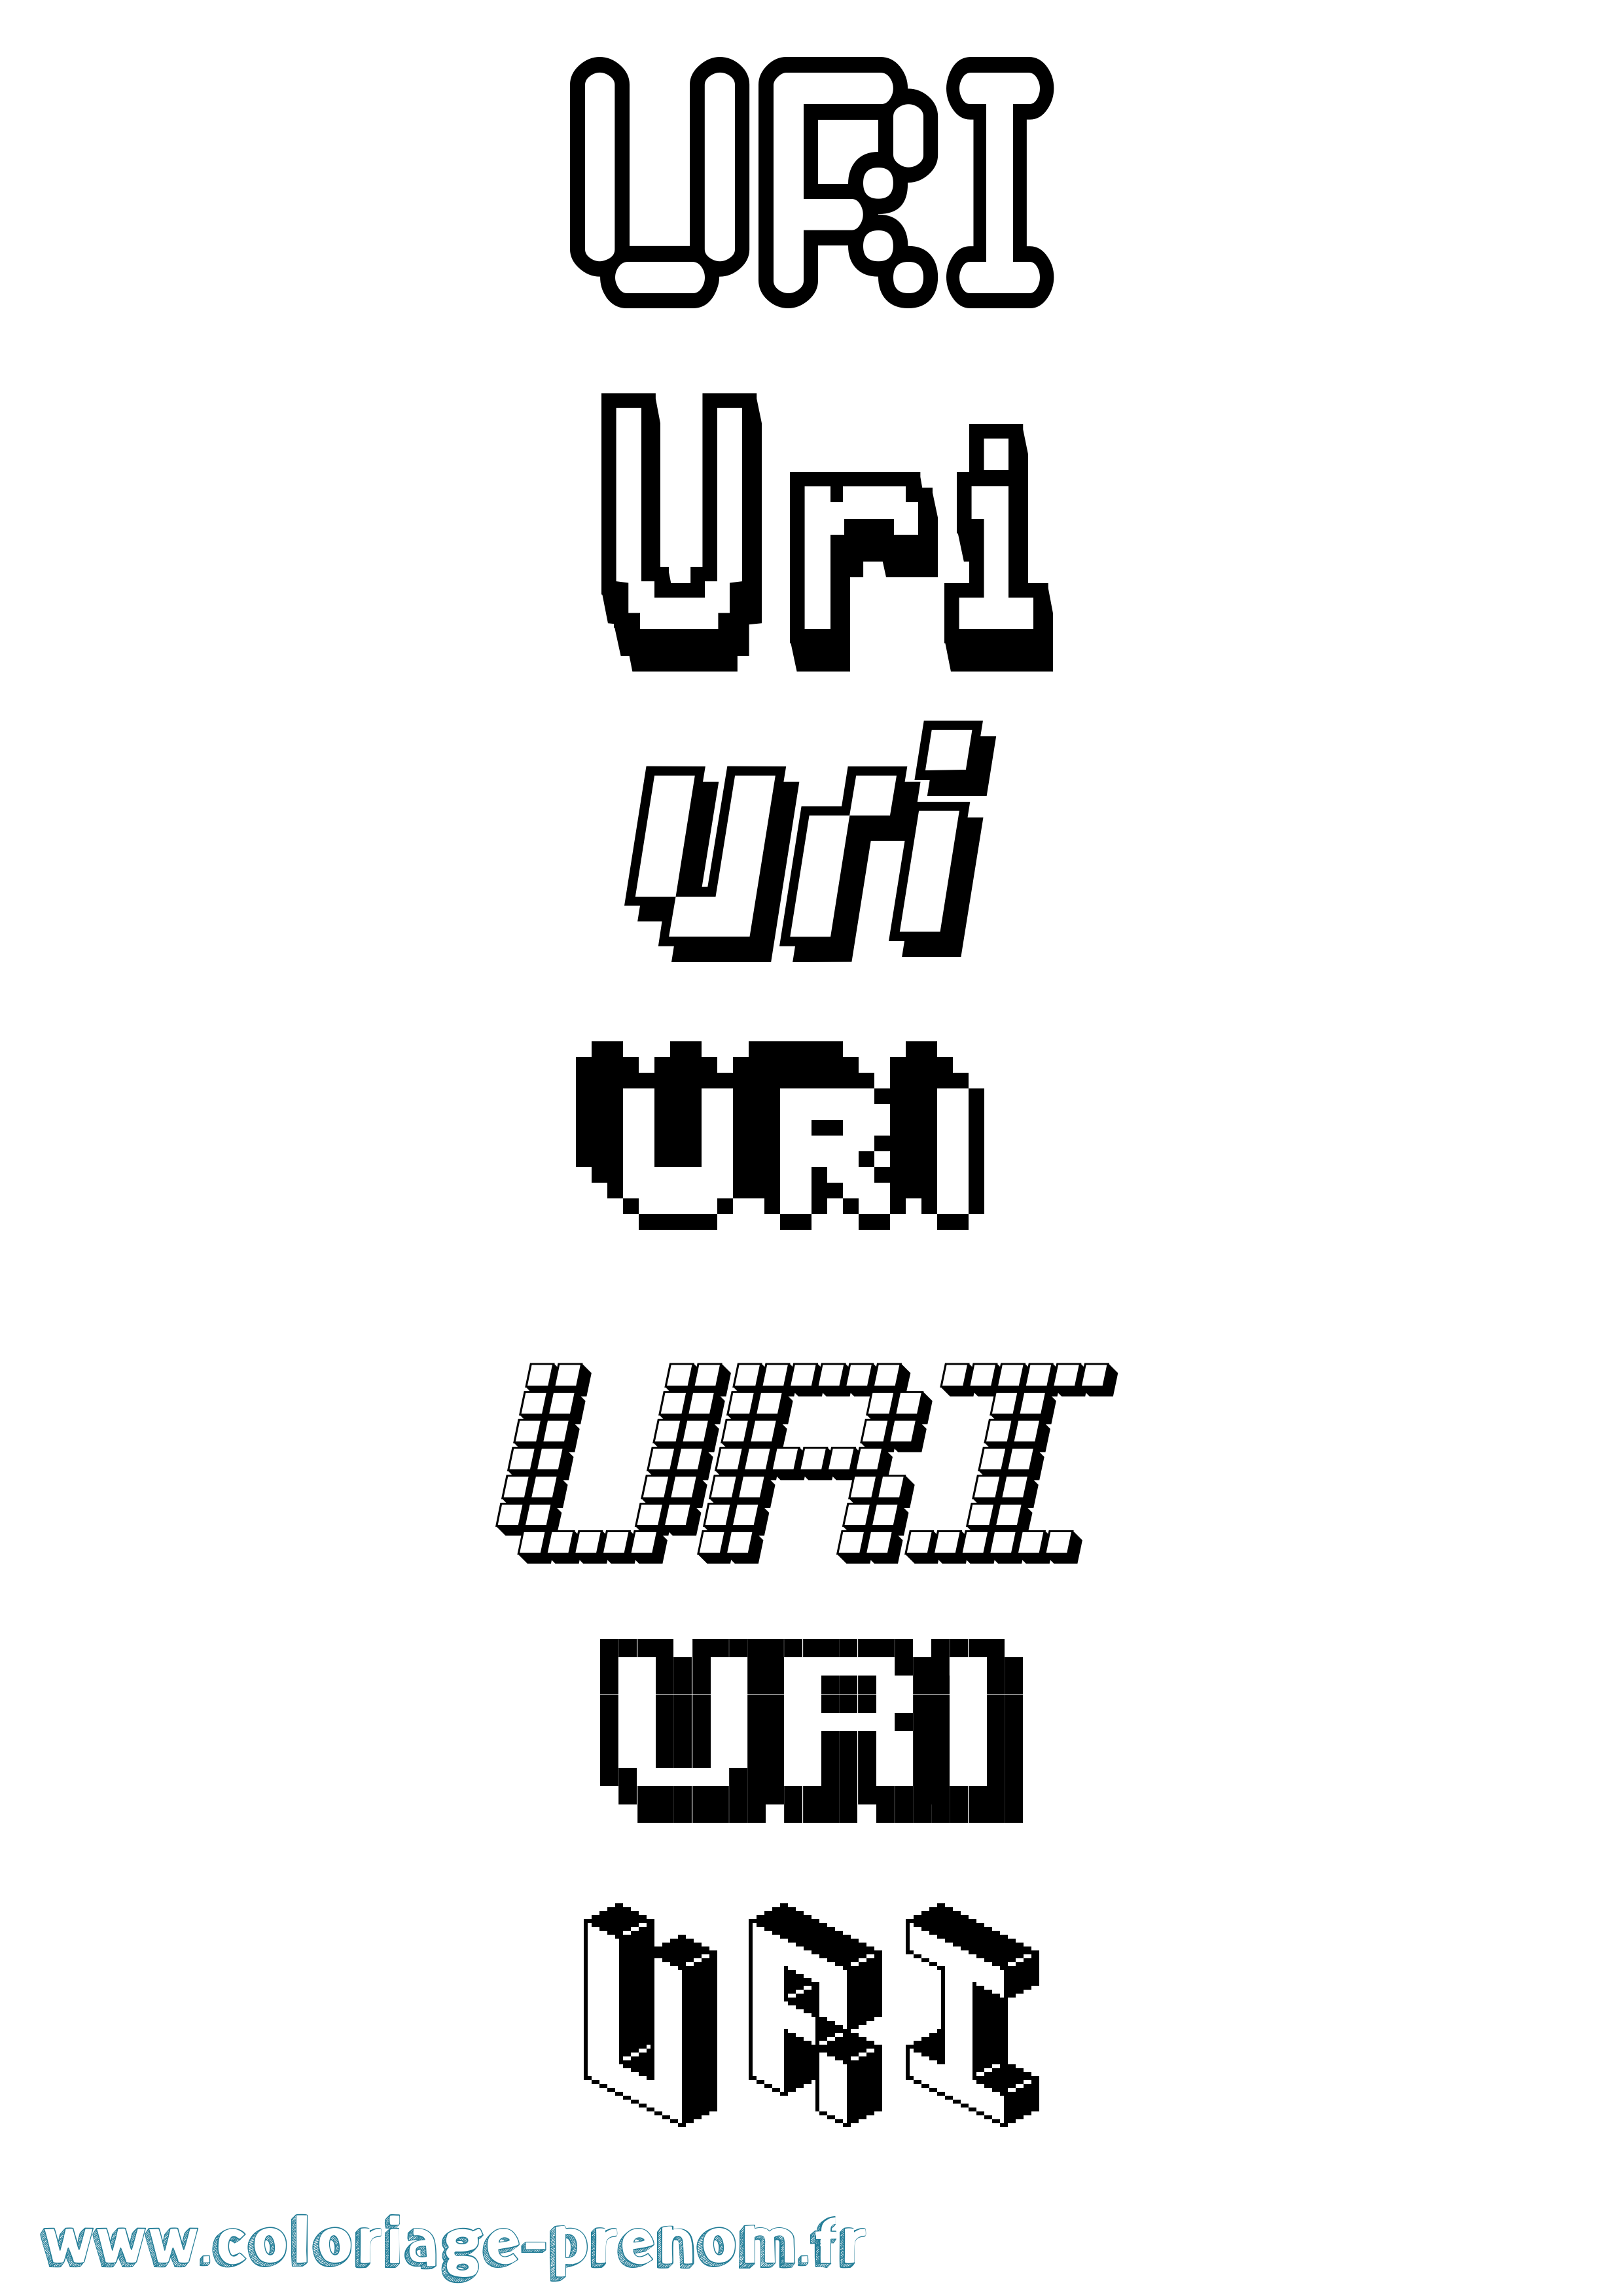 Coloriage prénom Uri Pixel